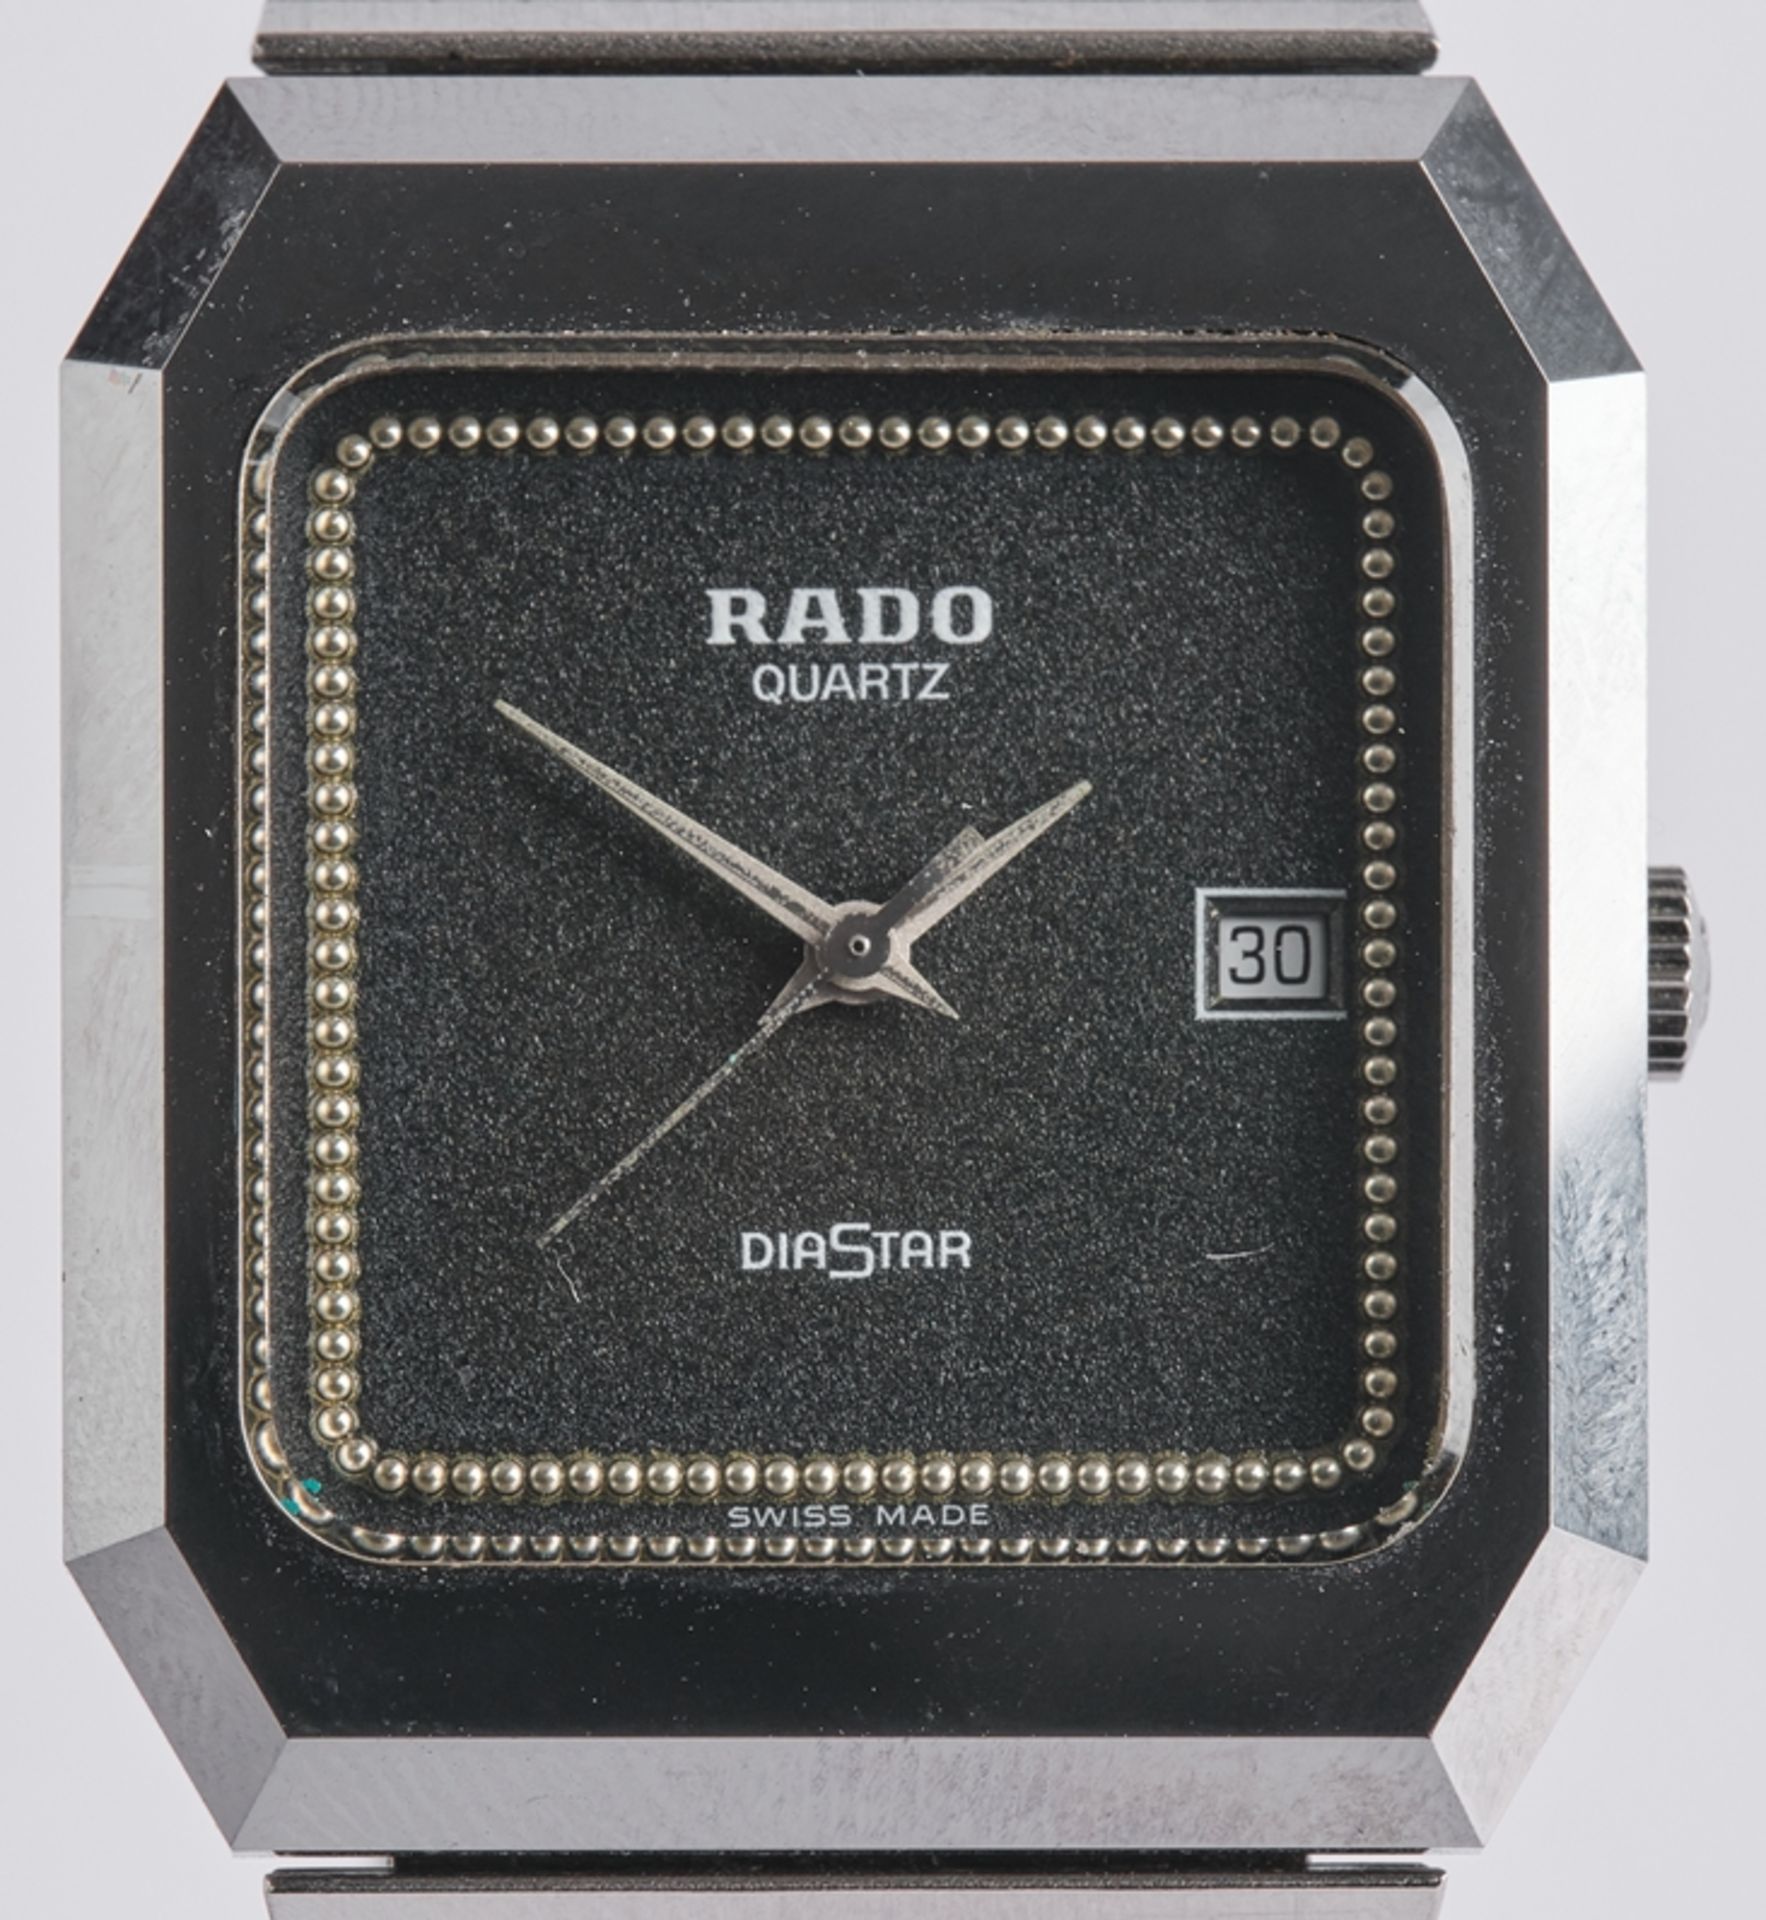 Rado, Armbanduhr, Modell Dia Star, Schweiz, 1980er Jahre, oktogonales Gehäuse, Quarzwerk, schwarzes - Bild 2 aus 7